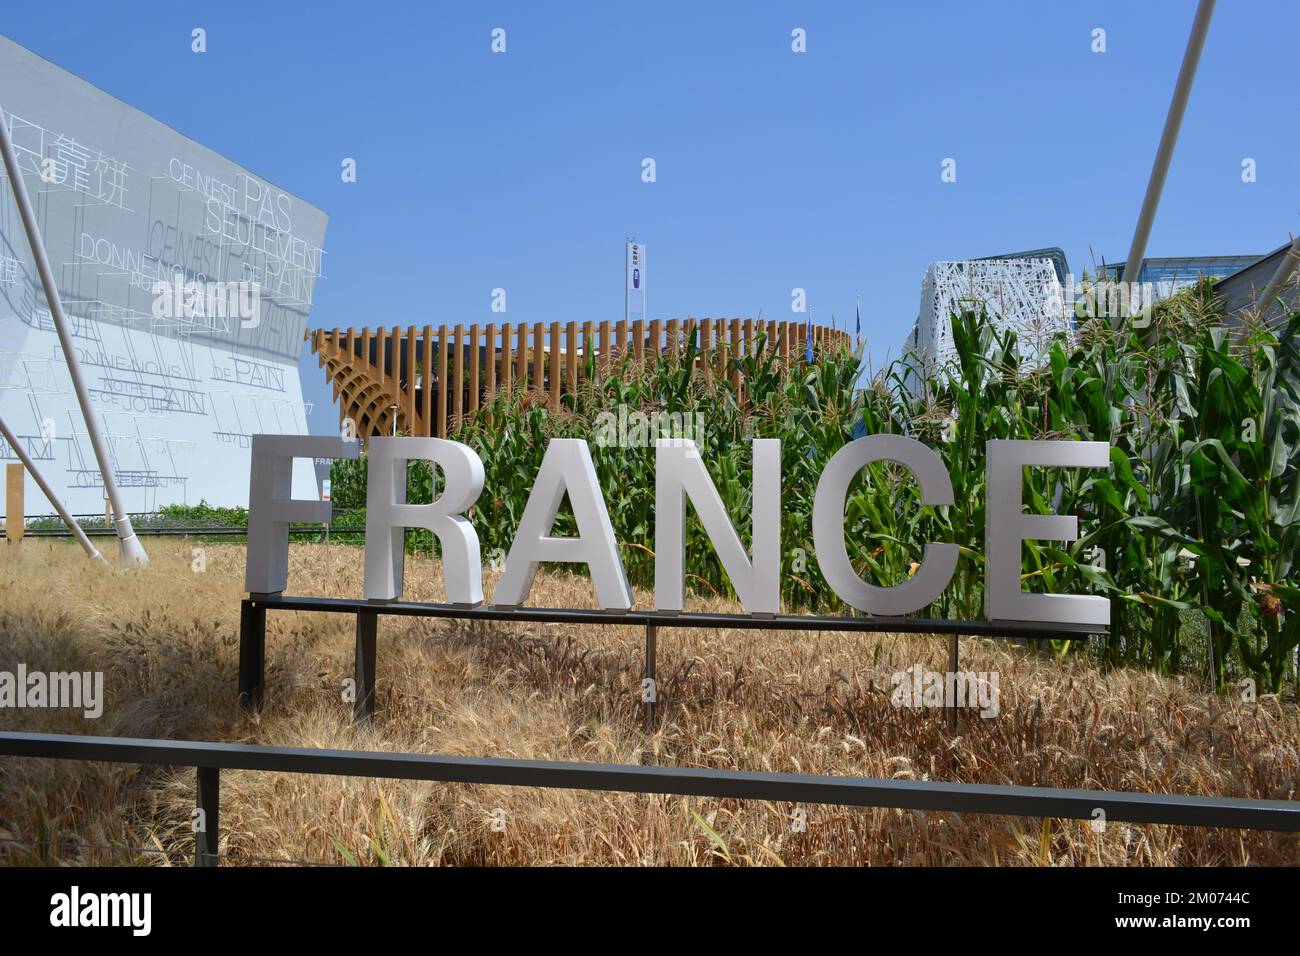 Vue panoramique de l'entrée du pavillon français à l'EXPO Milano 2015 avec la France écrite en grandes lettres. Banque D'Images